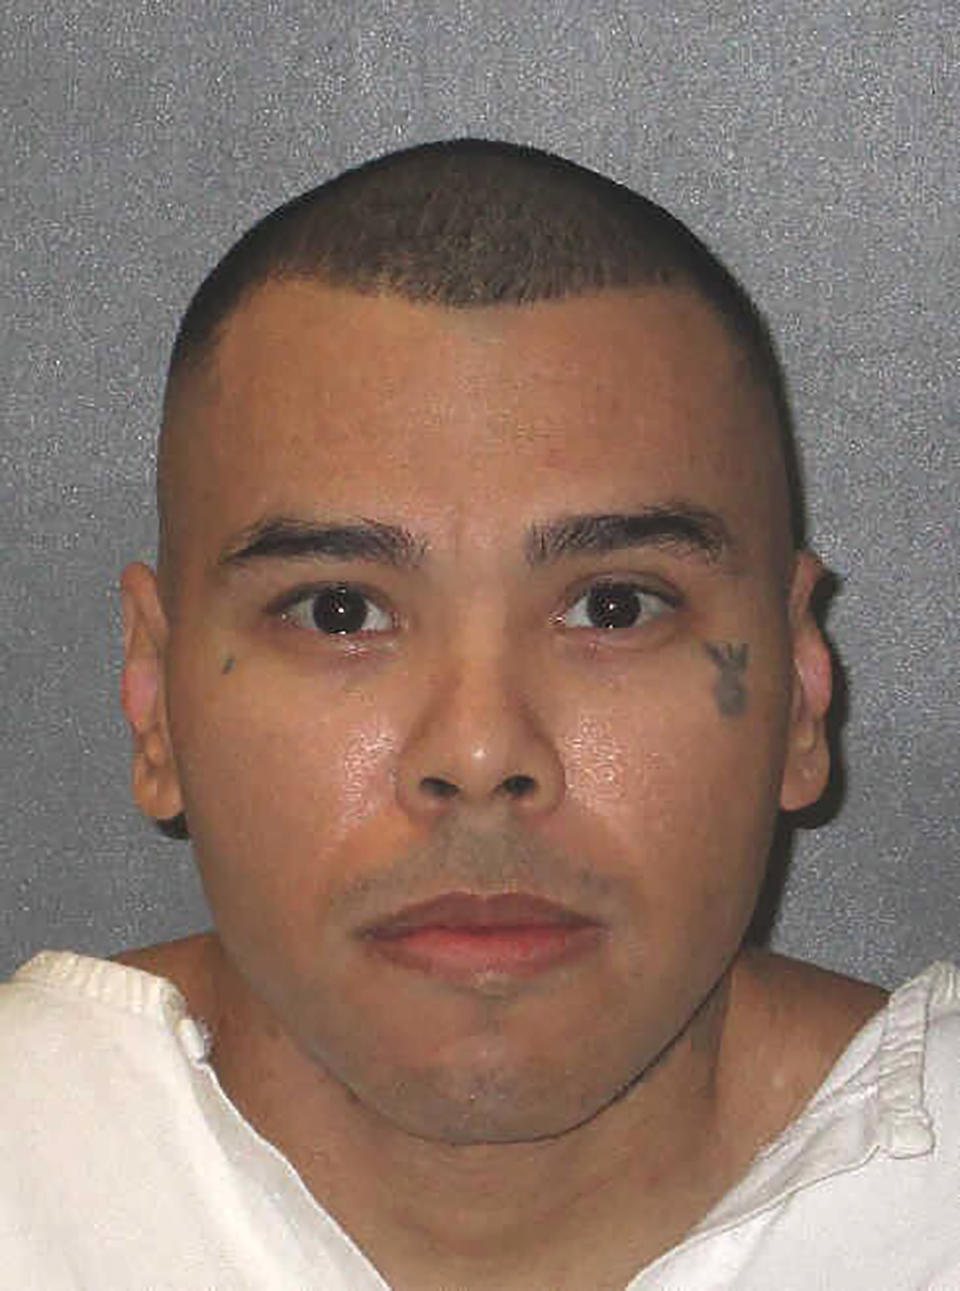 Ramiro Goncalez, condenado à morte, pede que sua execução seja adiada para que possa doar um rim. (Foto: Departamento de Justiça Criminal do Texas via Associated Press)